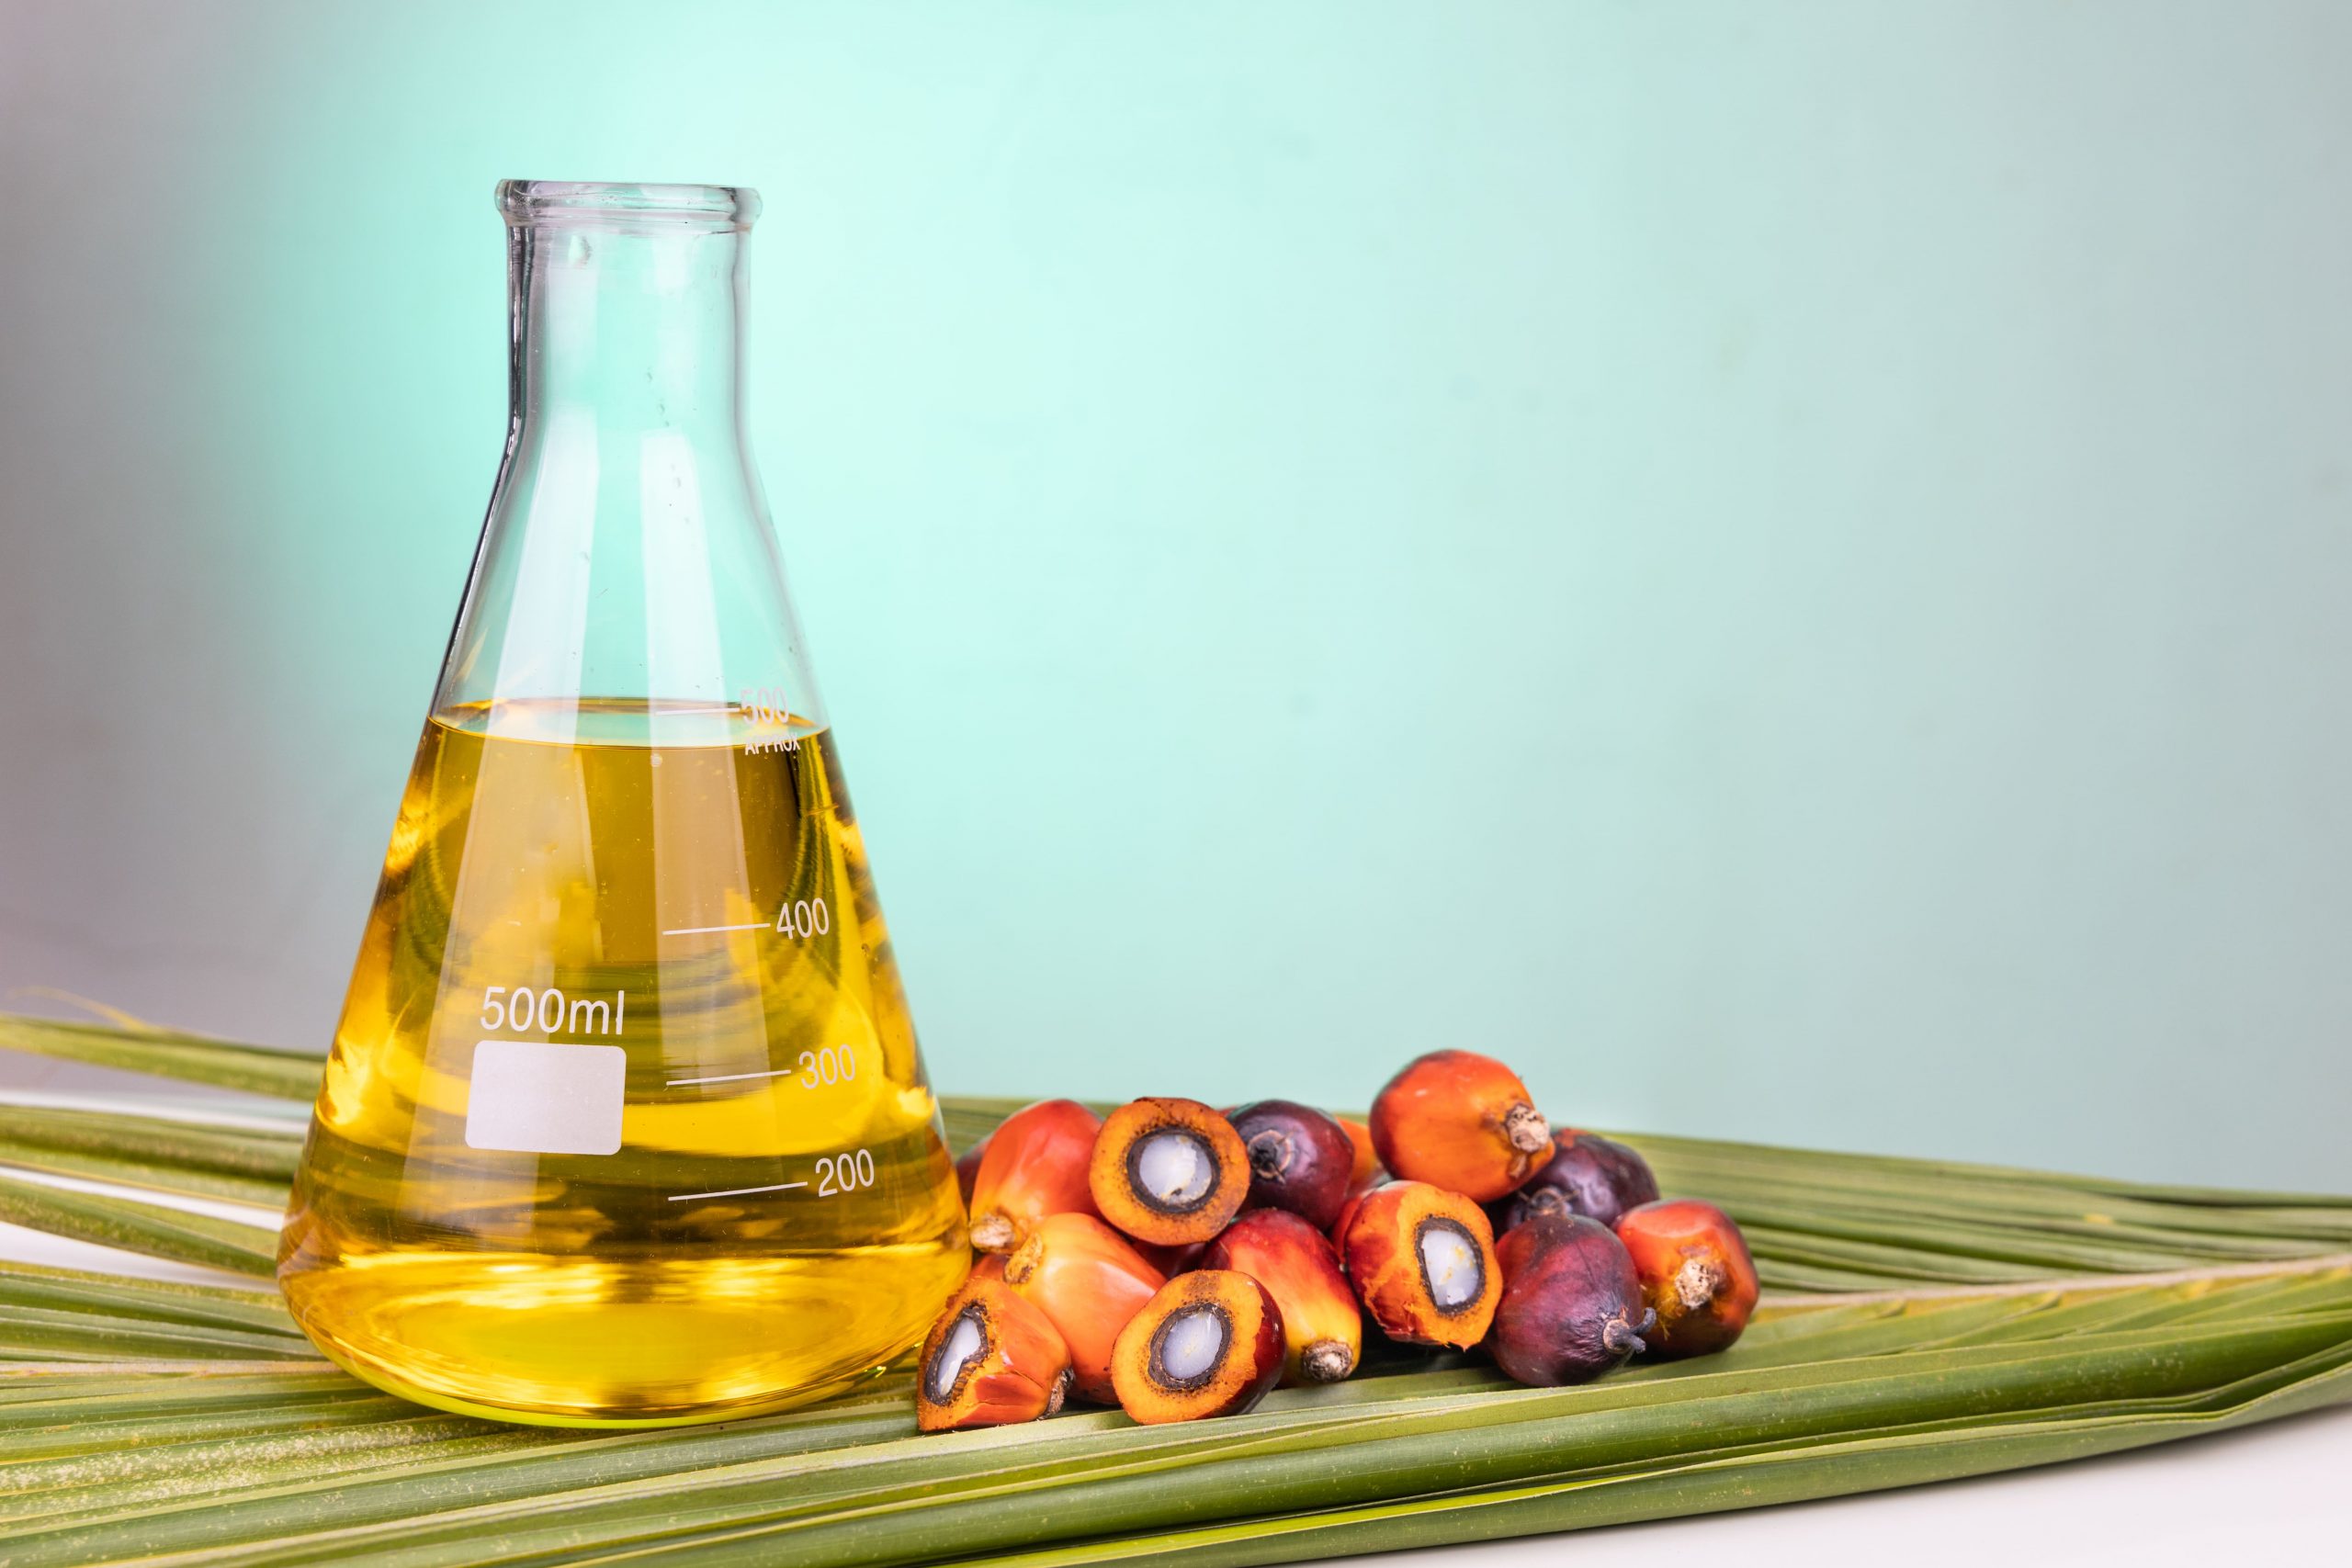 aceite de palma en un recipiente de cristal al lado de unos frutos de palmera